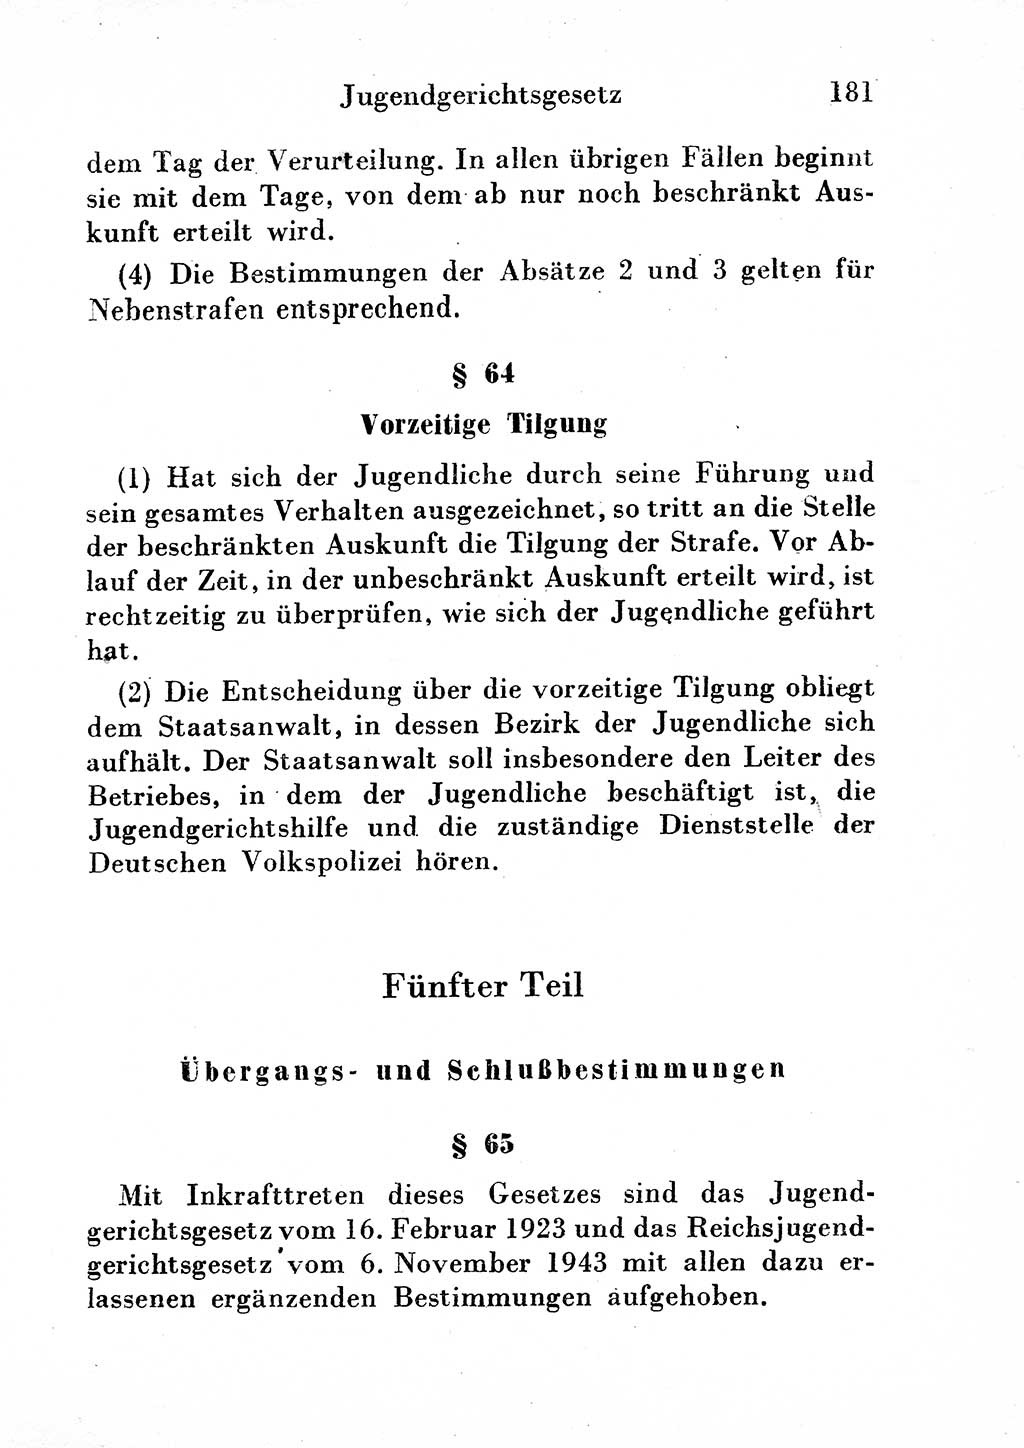 Strafgesetzbuch (StGB) und andere Strafgesetze [Deutsche Demokratische Republik (DDR)] 1954, Seite 181 (StGB Strafges. DDR 1954, S. 181)